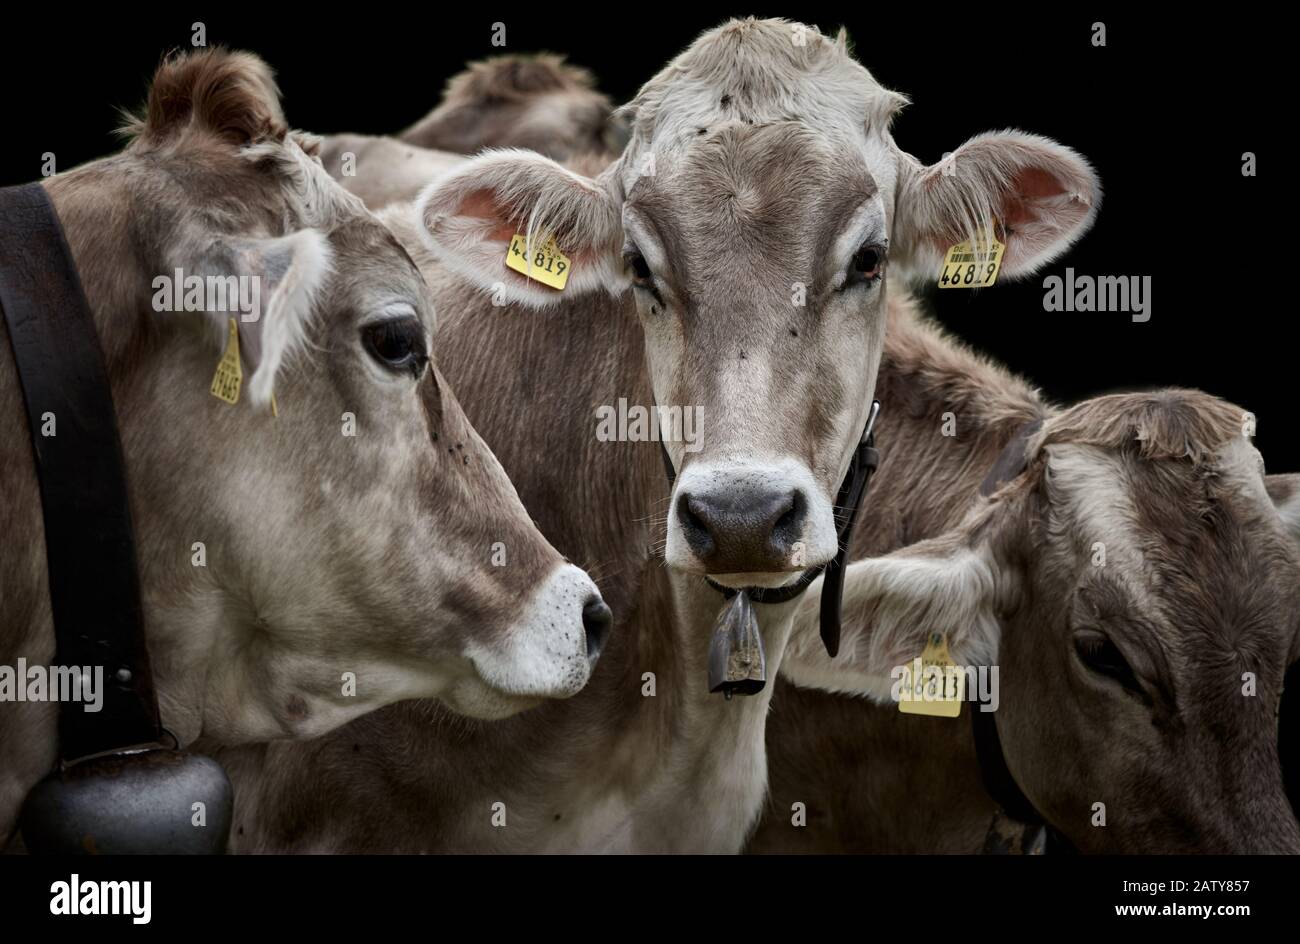 Tre mucche da latte marroni con campanelli di mucca e etichette gialle, da vicino e isolate su sfondo nero Foto Stock